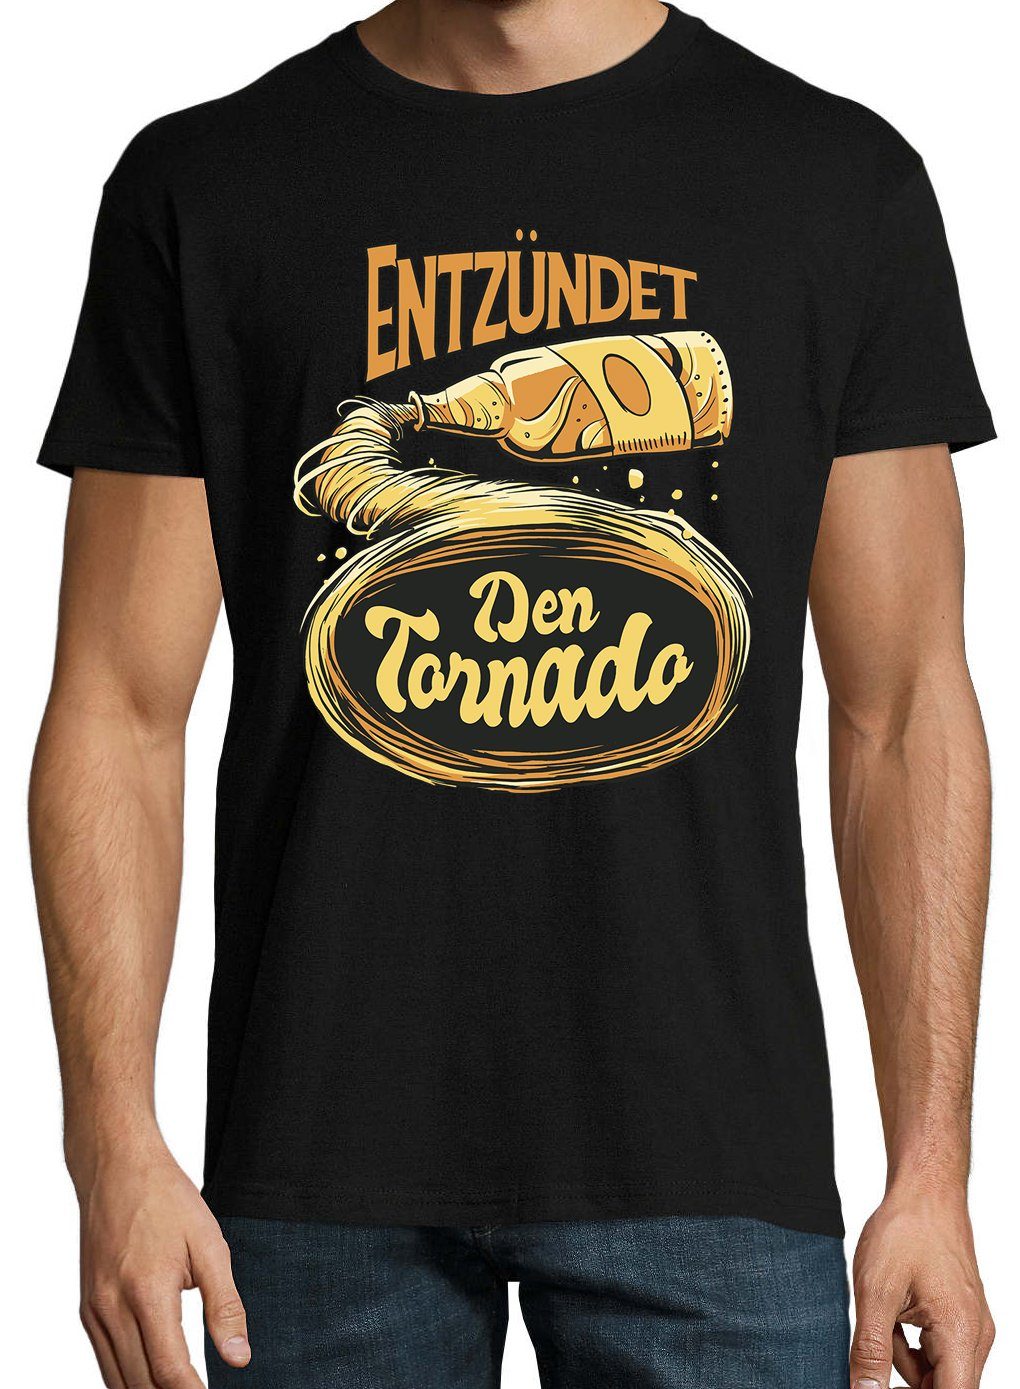 T-Shirt Youth Entzündet Tornado! Shirt Schwarz trendigem Designz Frontprint mit Den Herren Bier